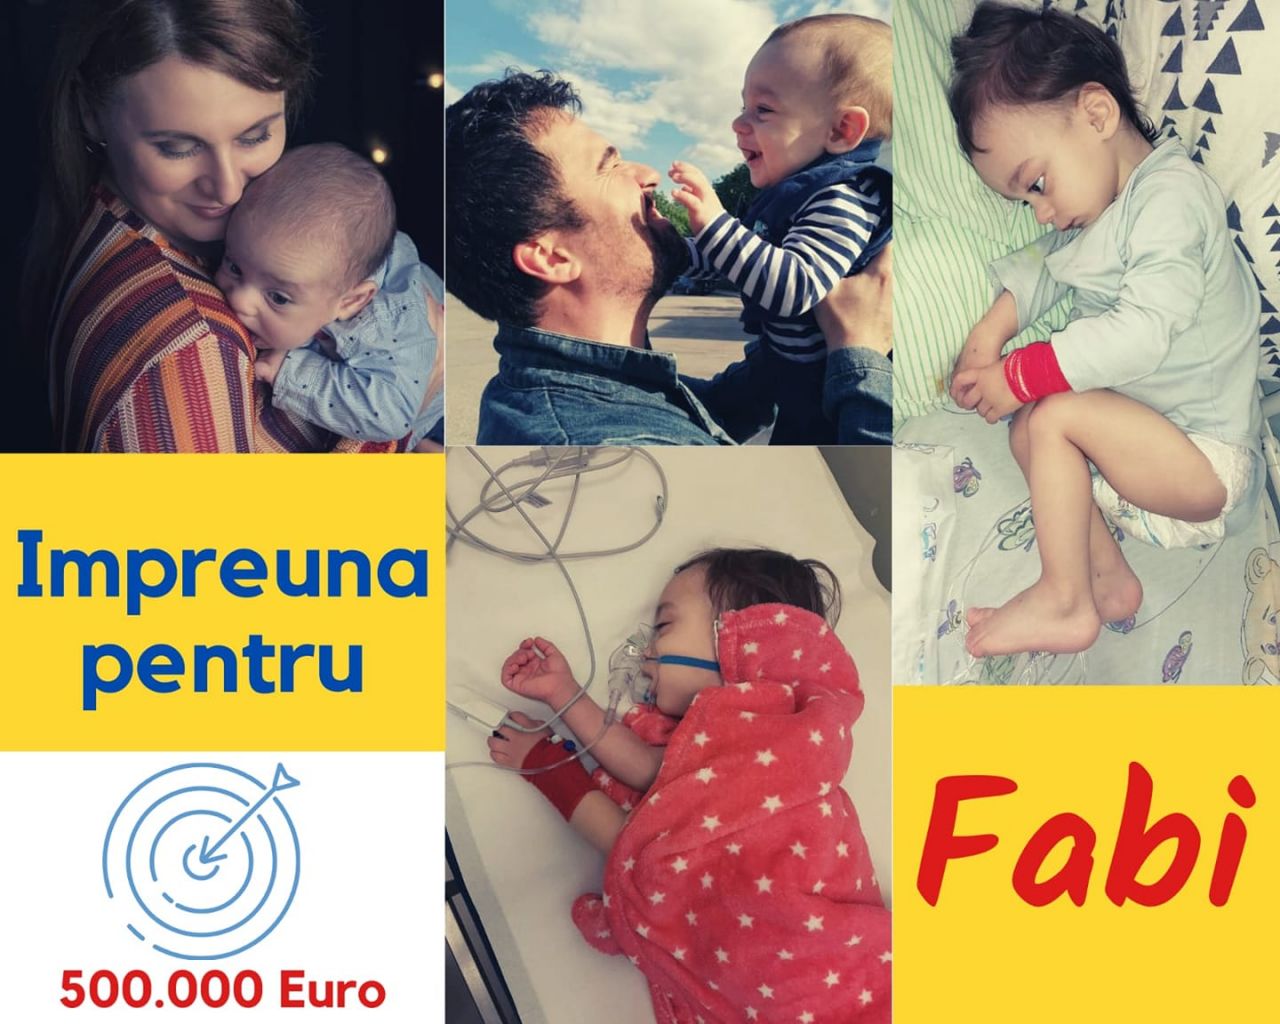 Un copil din Cluj are nevoie de ajutor! Fabi suferă de o formă rară de cancer și are nevoie de tratament de specialitate. Sursă foto: Facebook